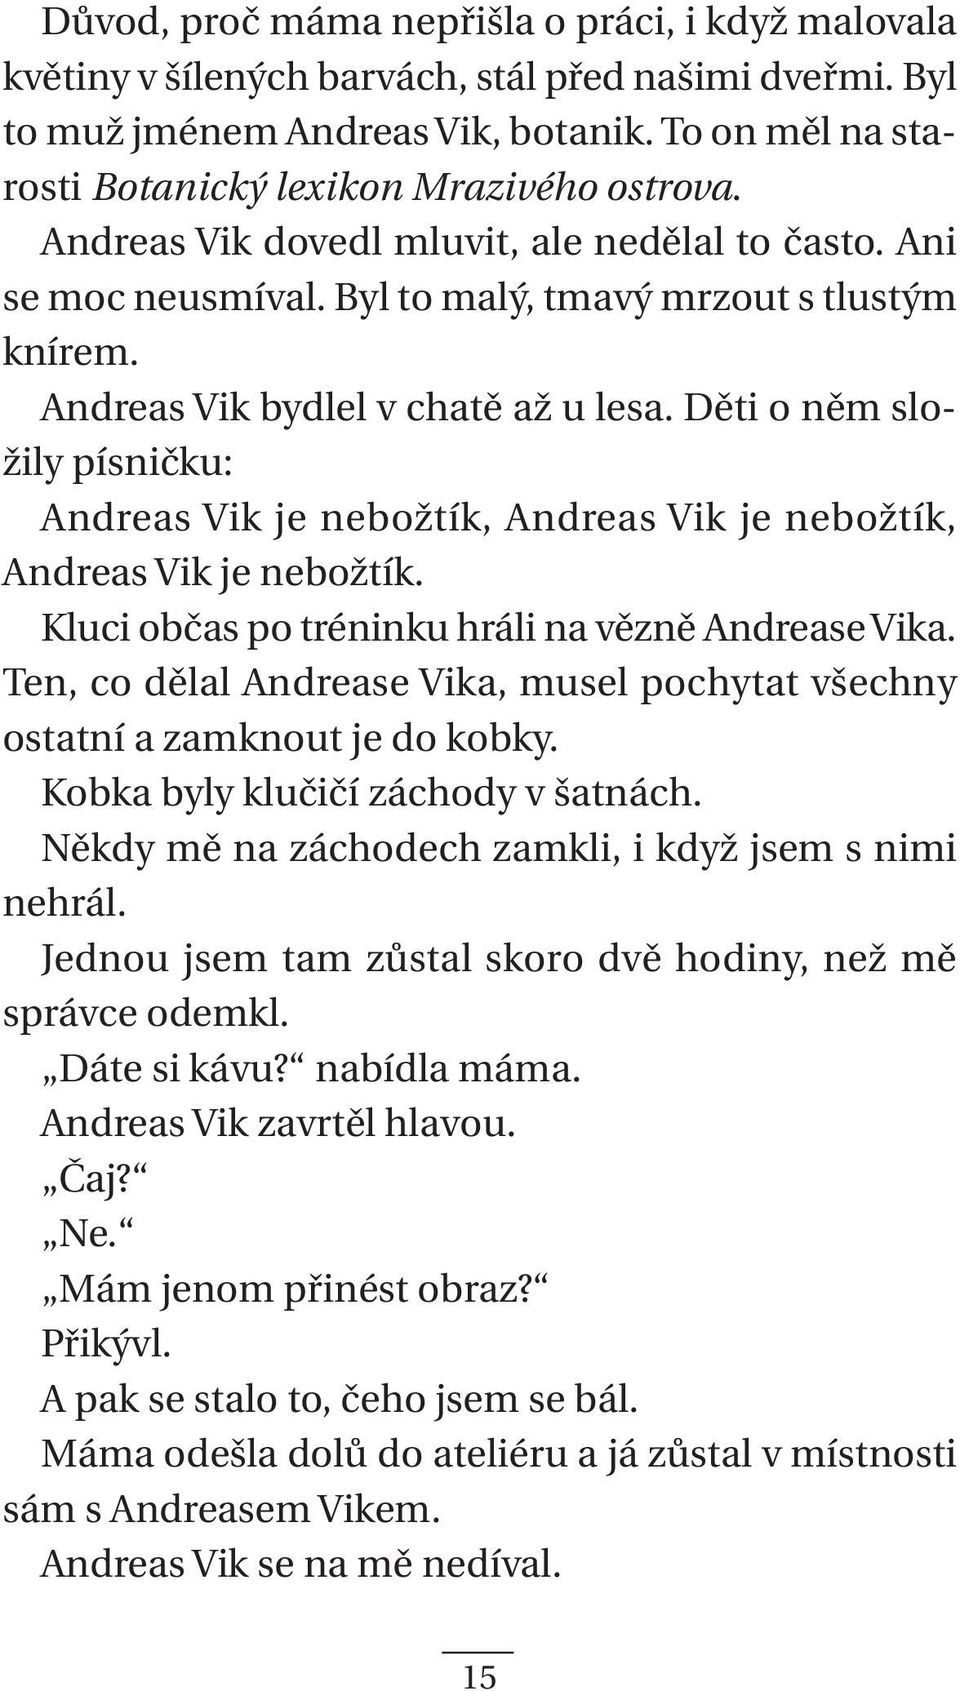 Andreas Vik bydlel v chatě až u lesa. Děti o něm složily písničku: Andreas Vik je nebožtík, Andreas Vik je nebožtík, Andreas Vik je nebožtík. Kluci občas po tréninku hráli na vězně Andrease Vika.